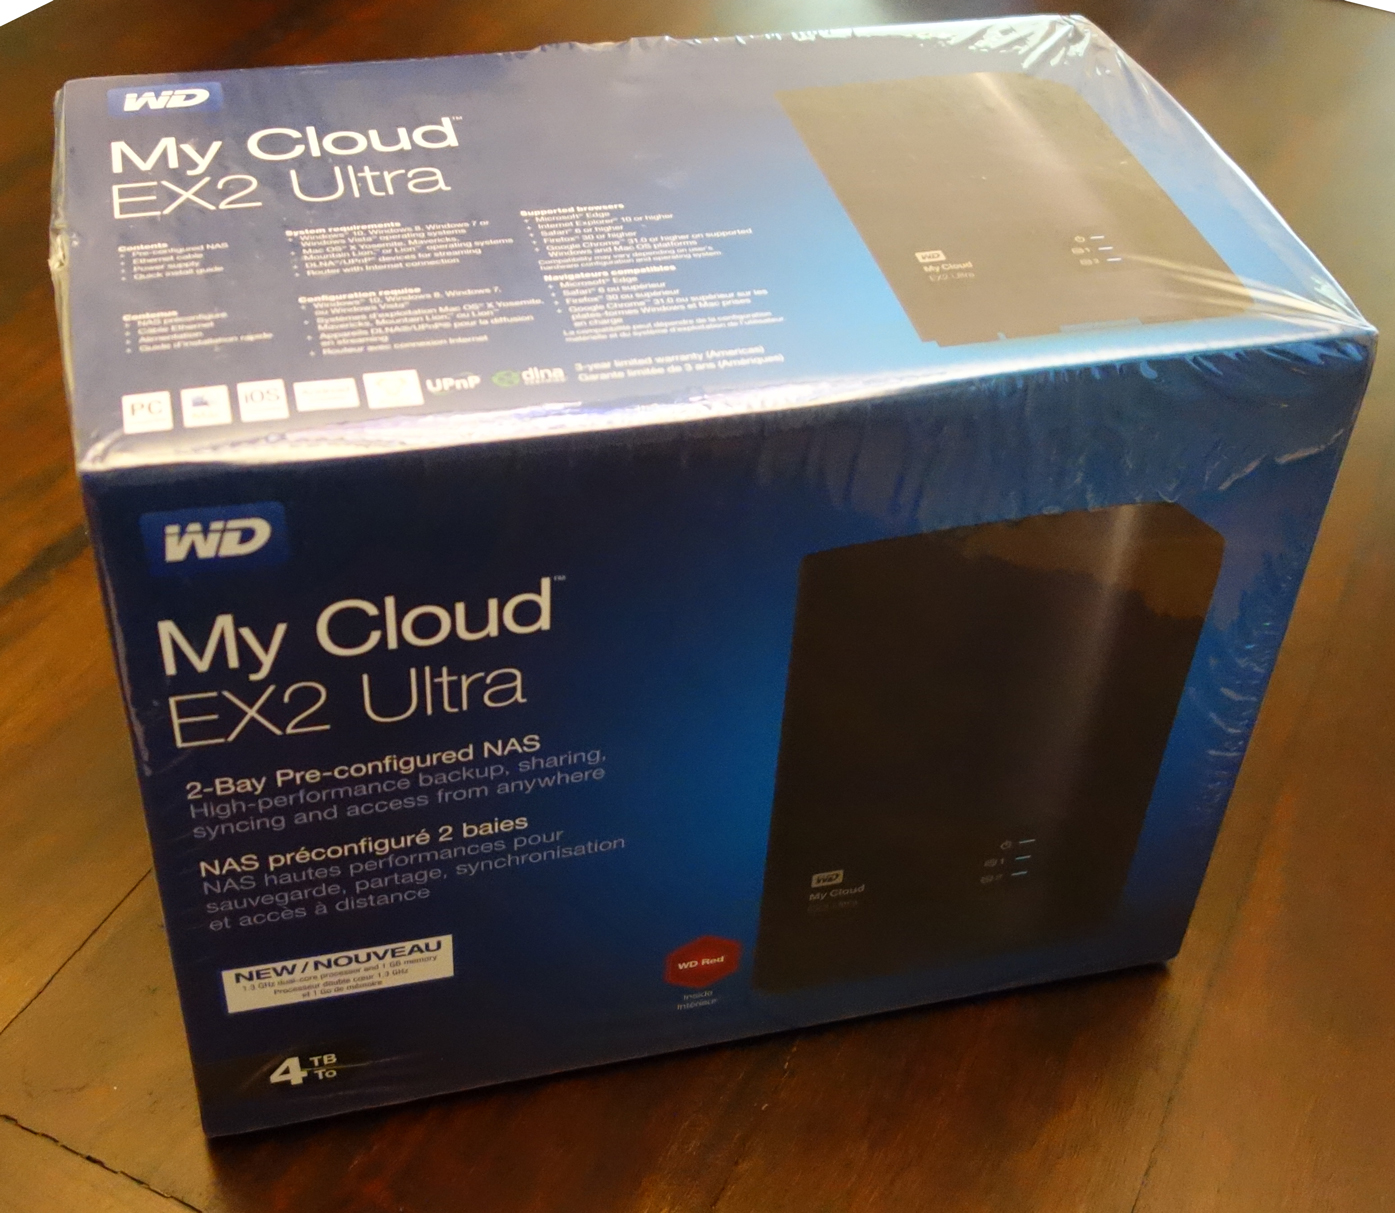 WD My Cloud EX2 Ultra box